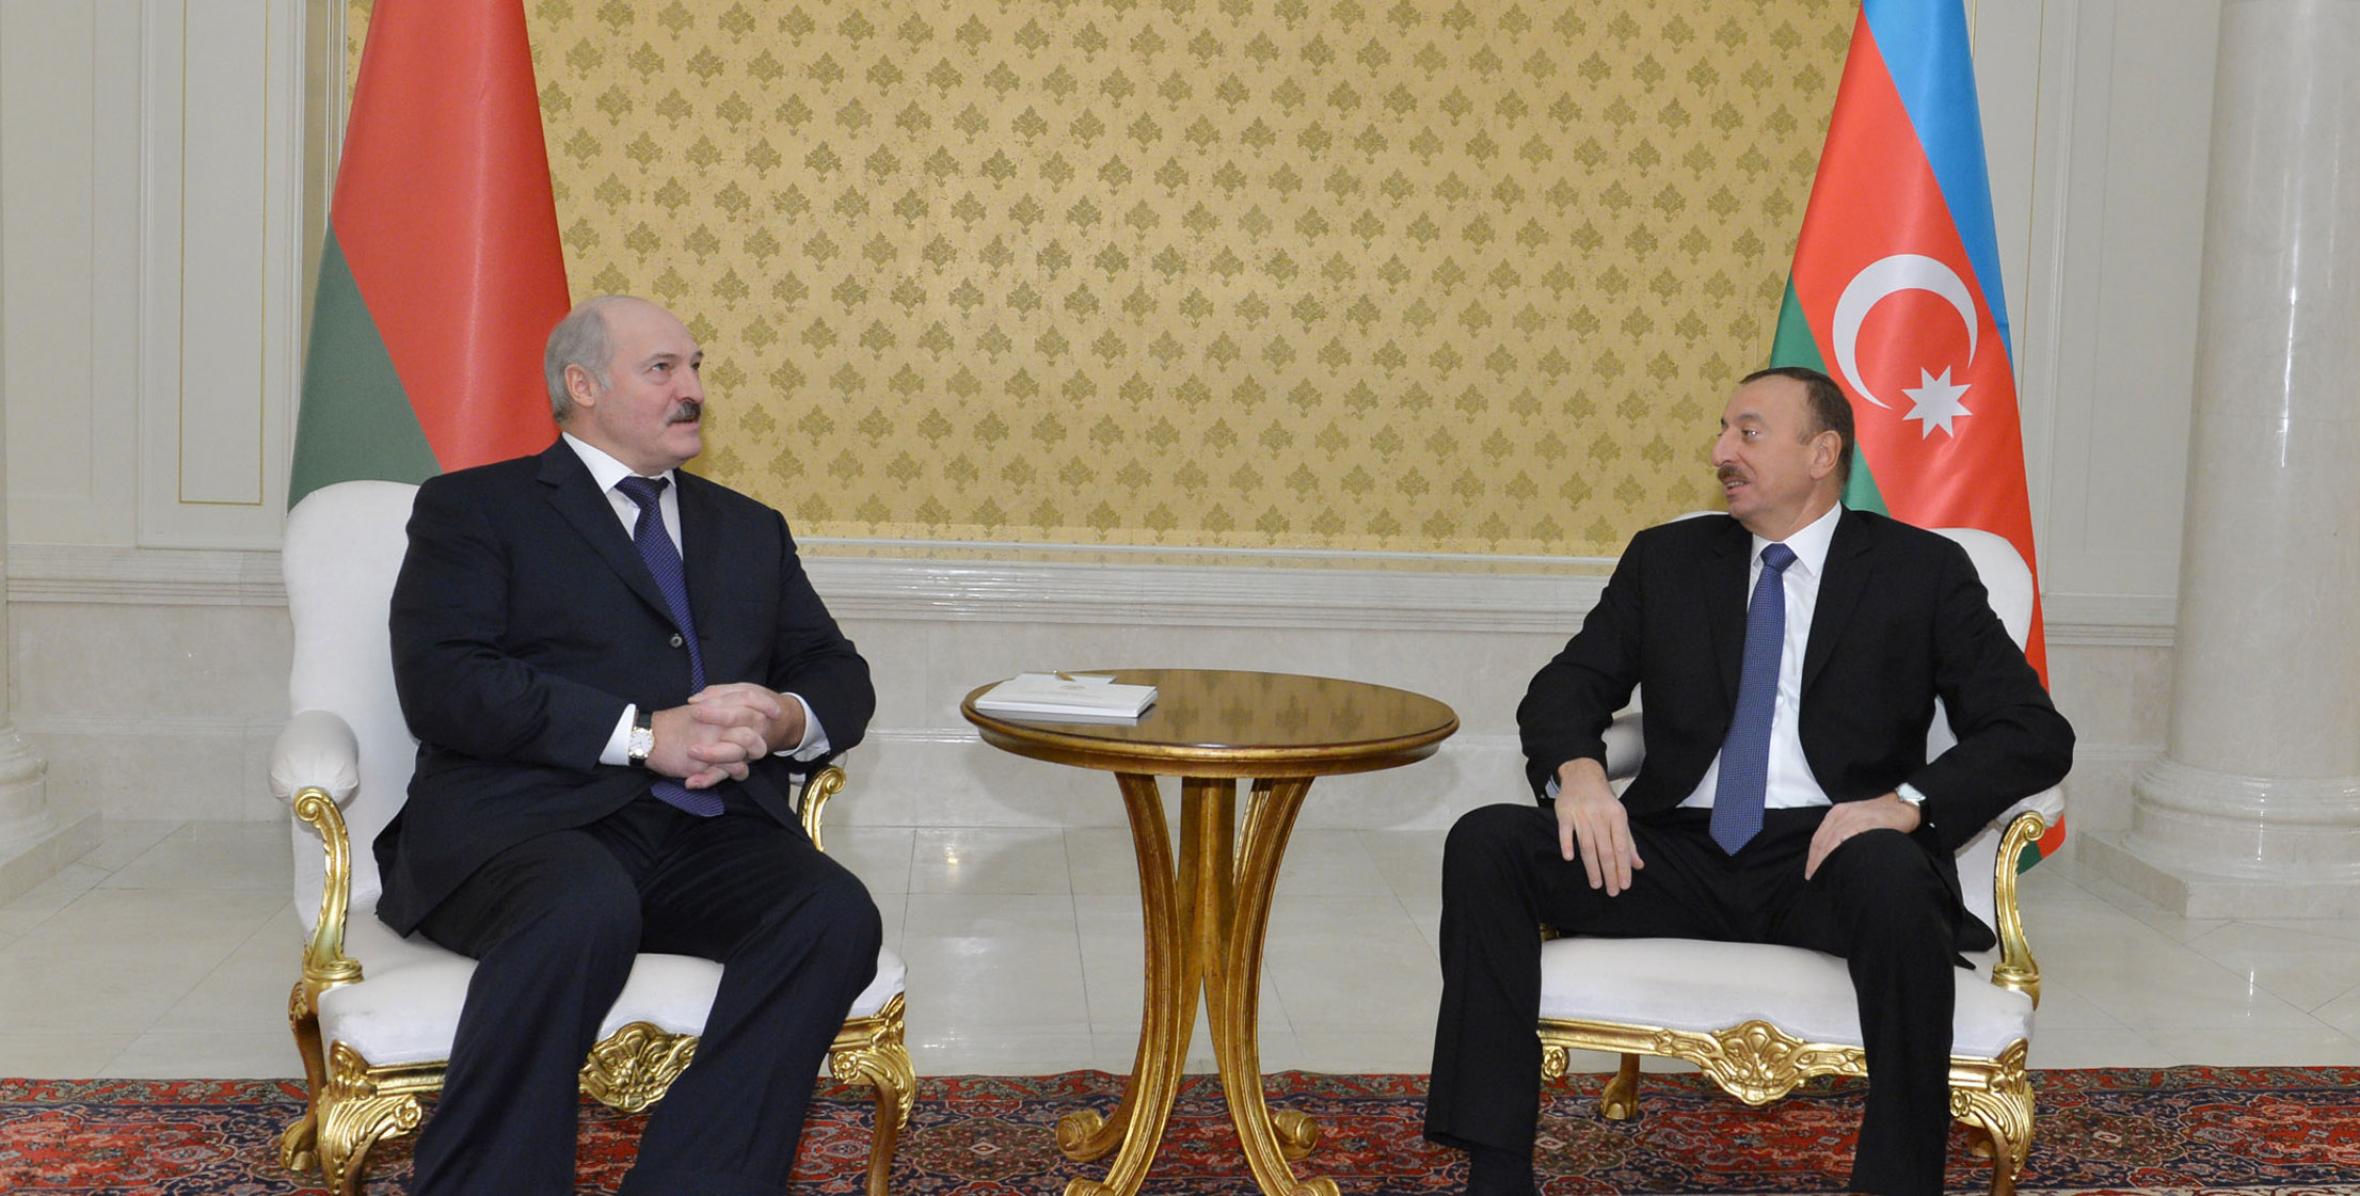 İlham Əliyevin və Belarus Prezidenti Aleksandr Lukaşenkonun təkbətək görüşü keçirilmişdir